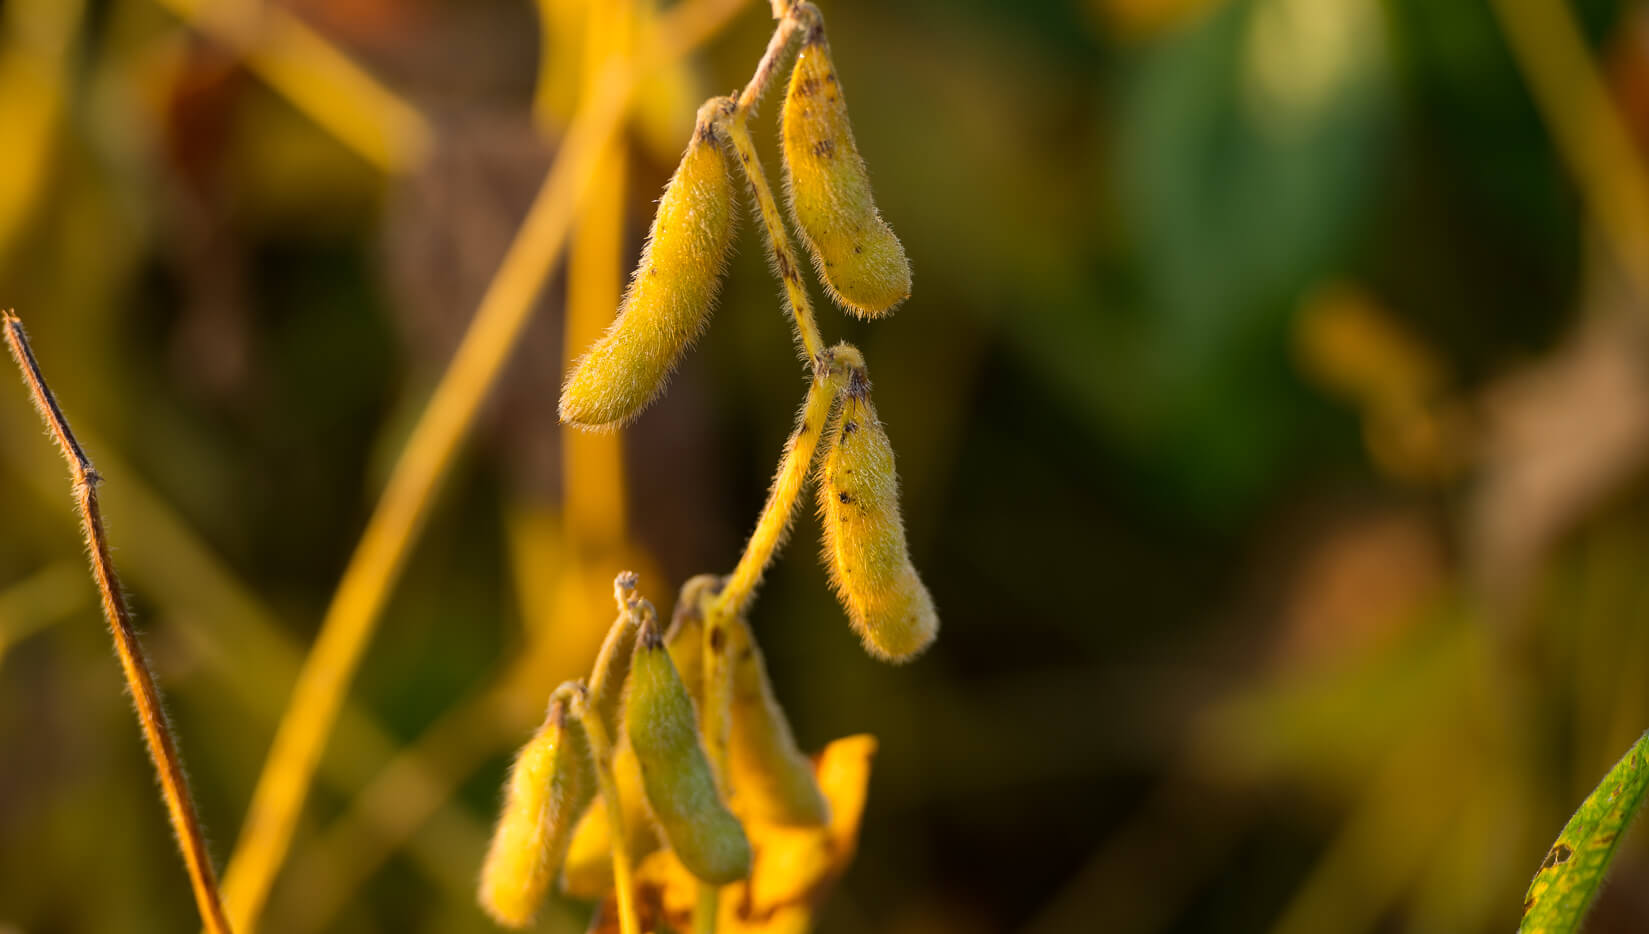 Soybean pods in sunlight